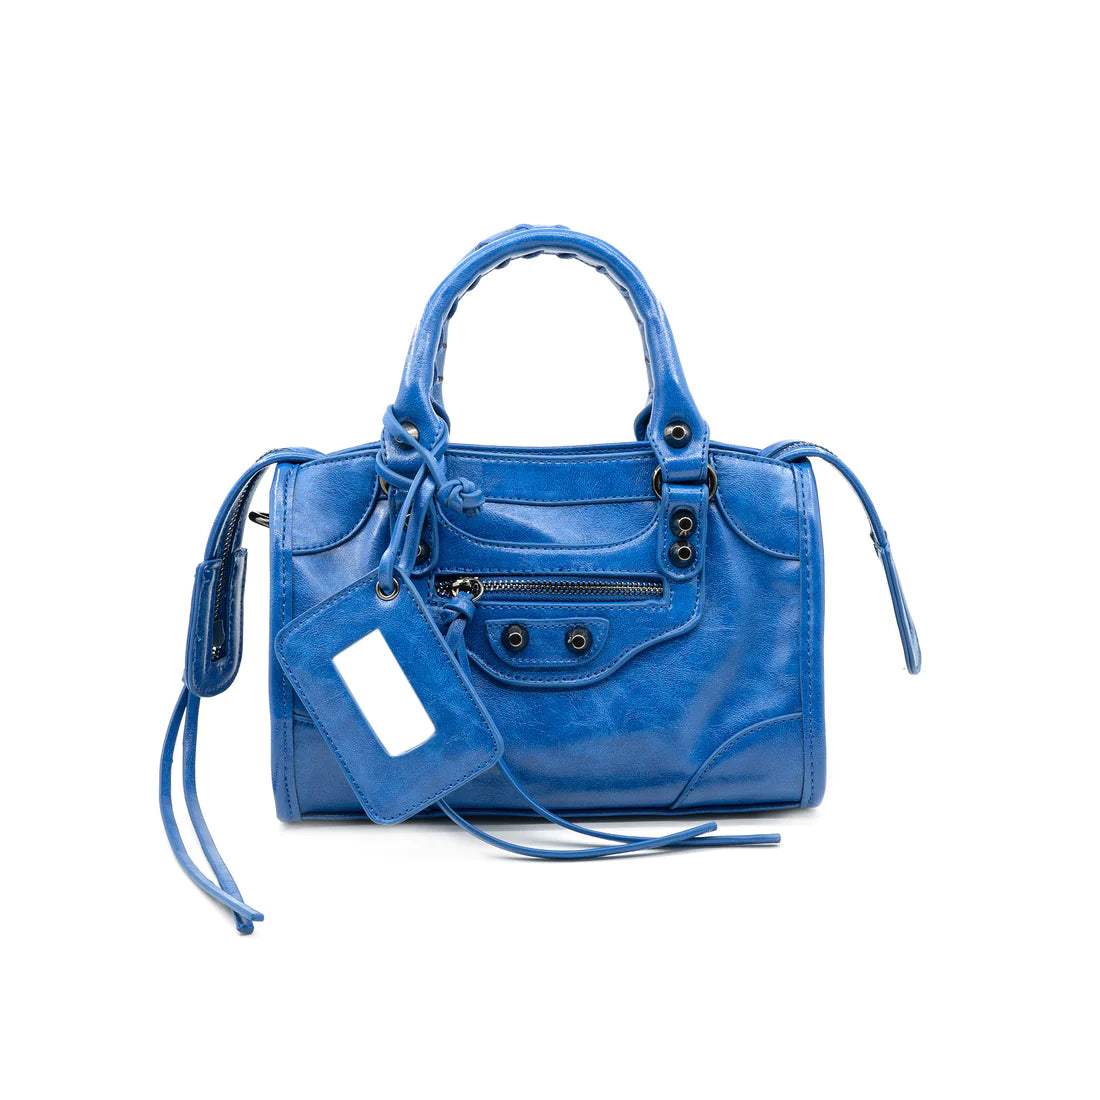 Blue crossbody handbag